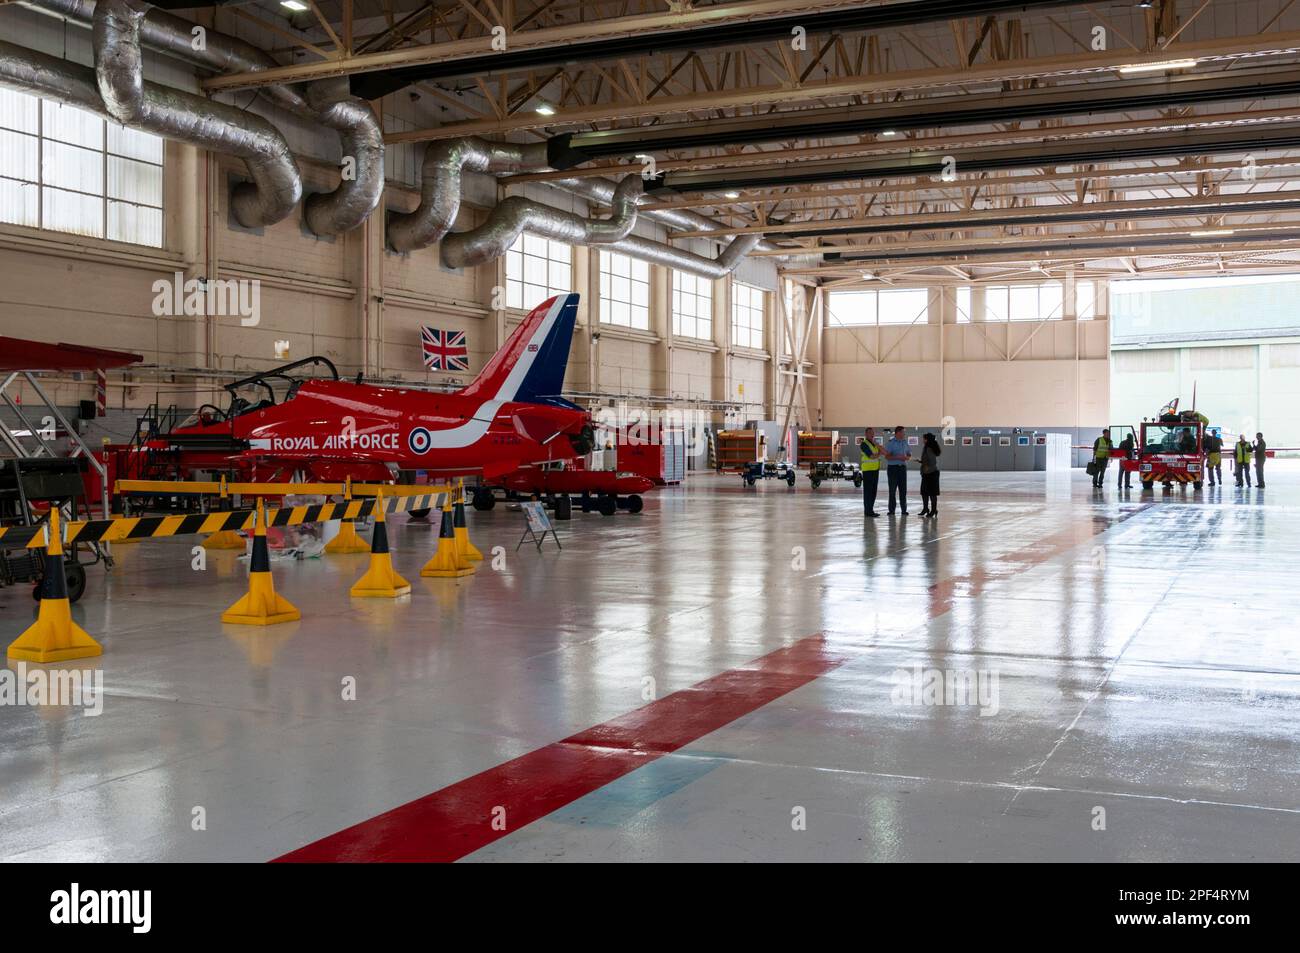 Royal Air Force Red Arrows mostra il team BAe Hawk T1 jet plane in un hangar al RAF Scampton, Regno Unito. Vano di manutenzione Foto Stock